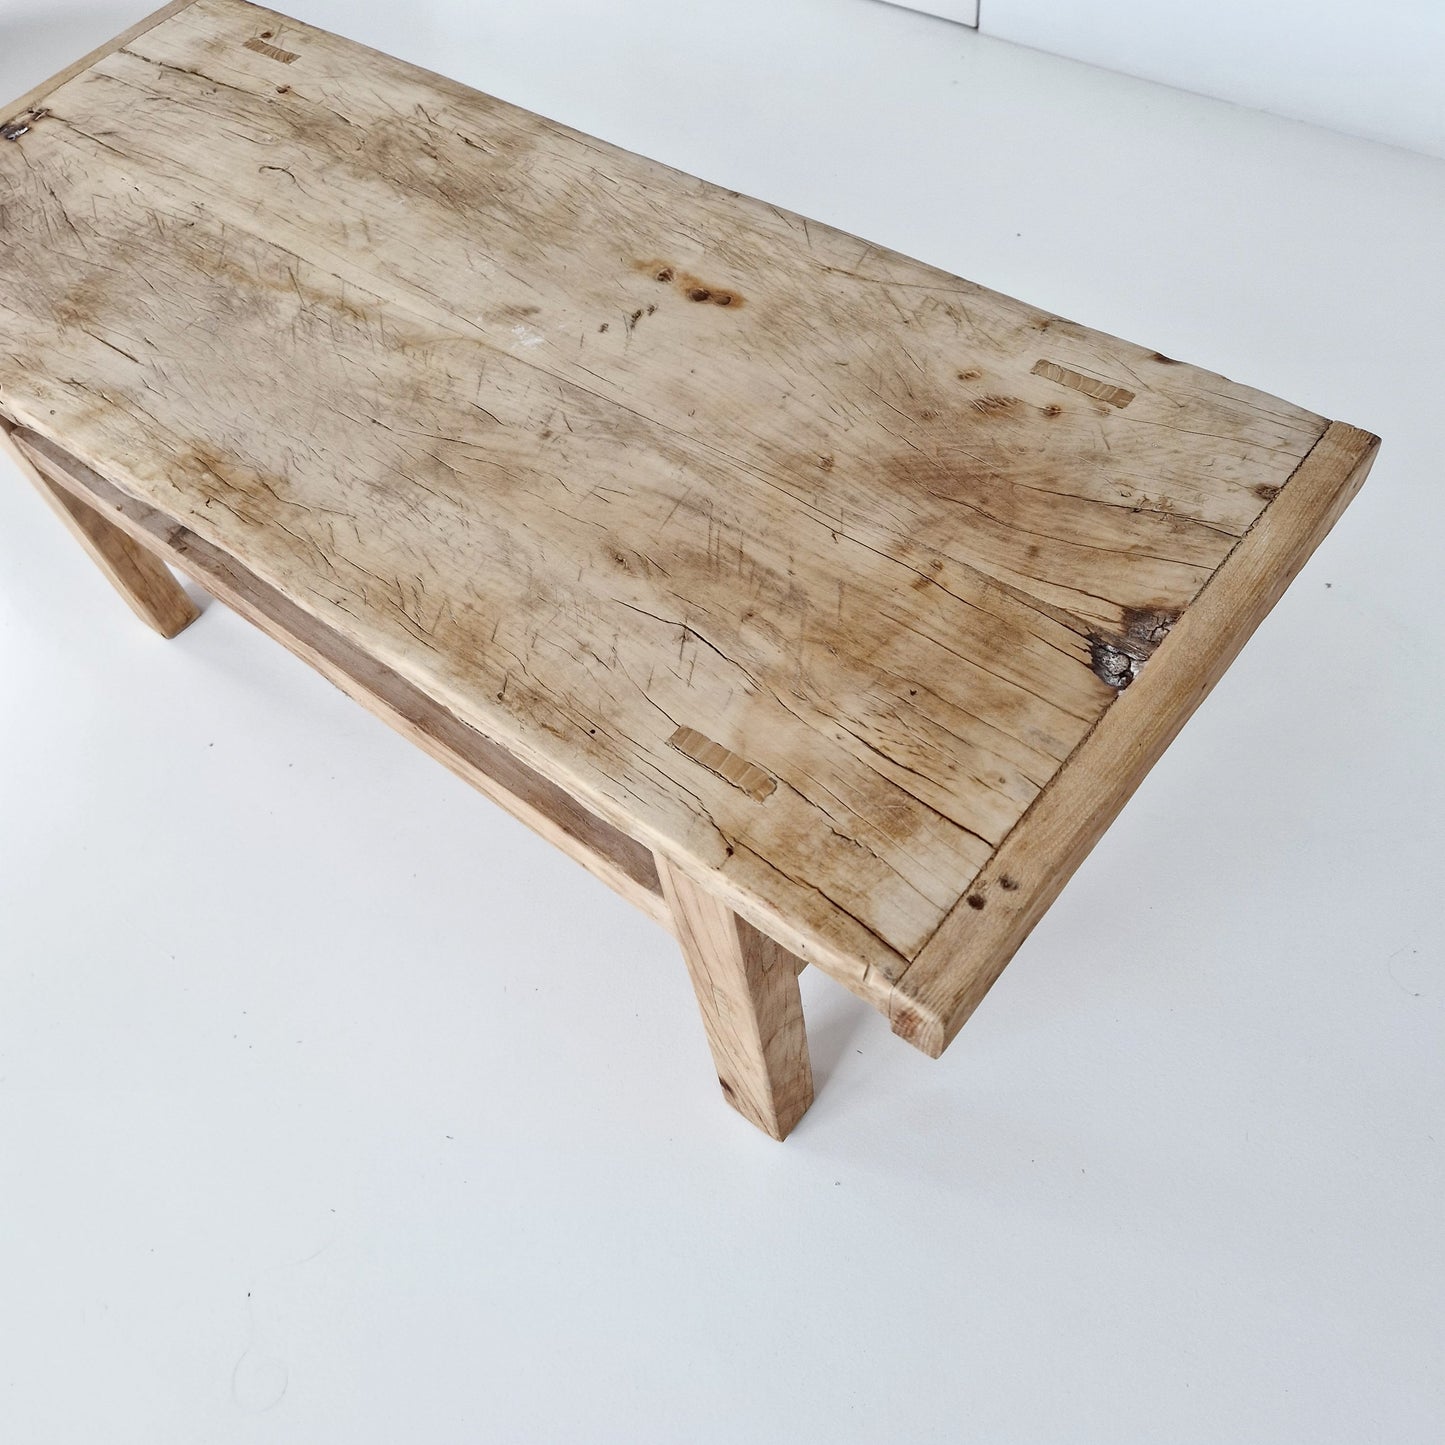 Chinees oud houten tafeltje #6 (105,5x42x40)